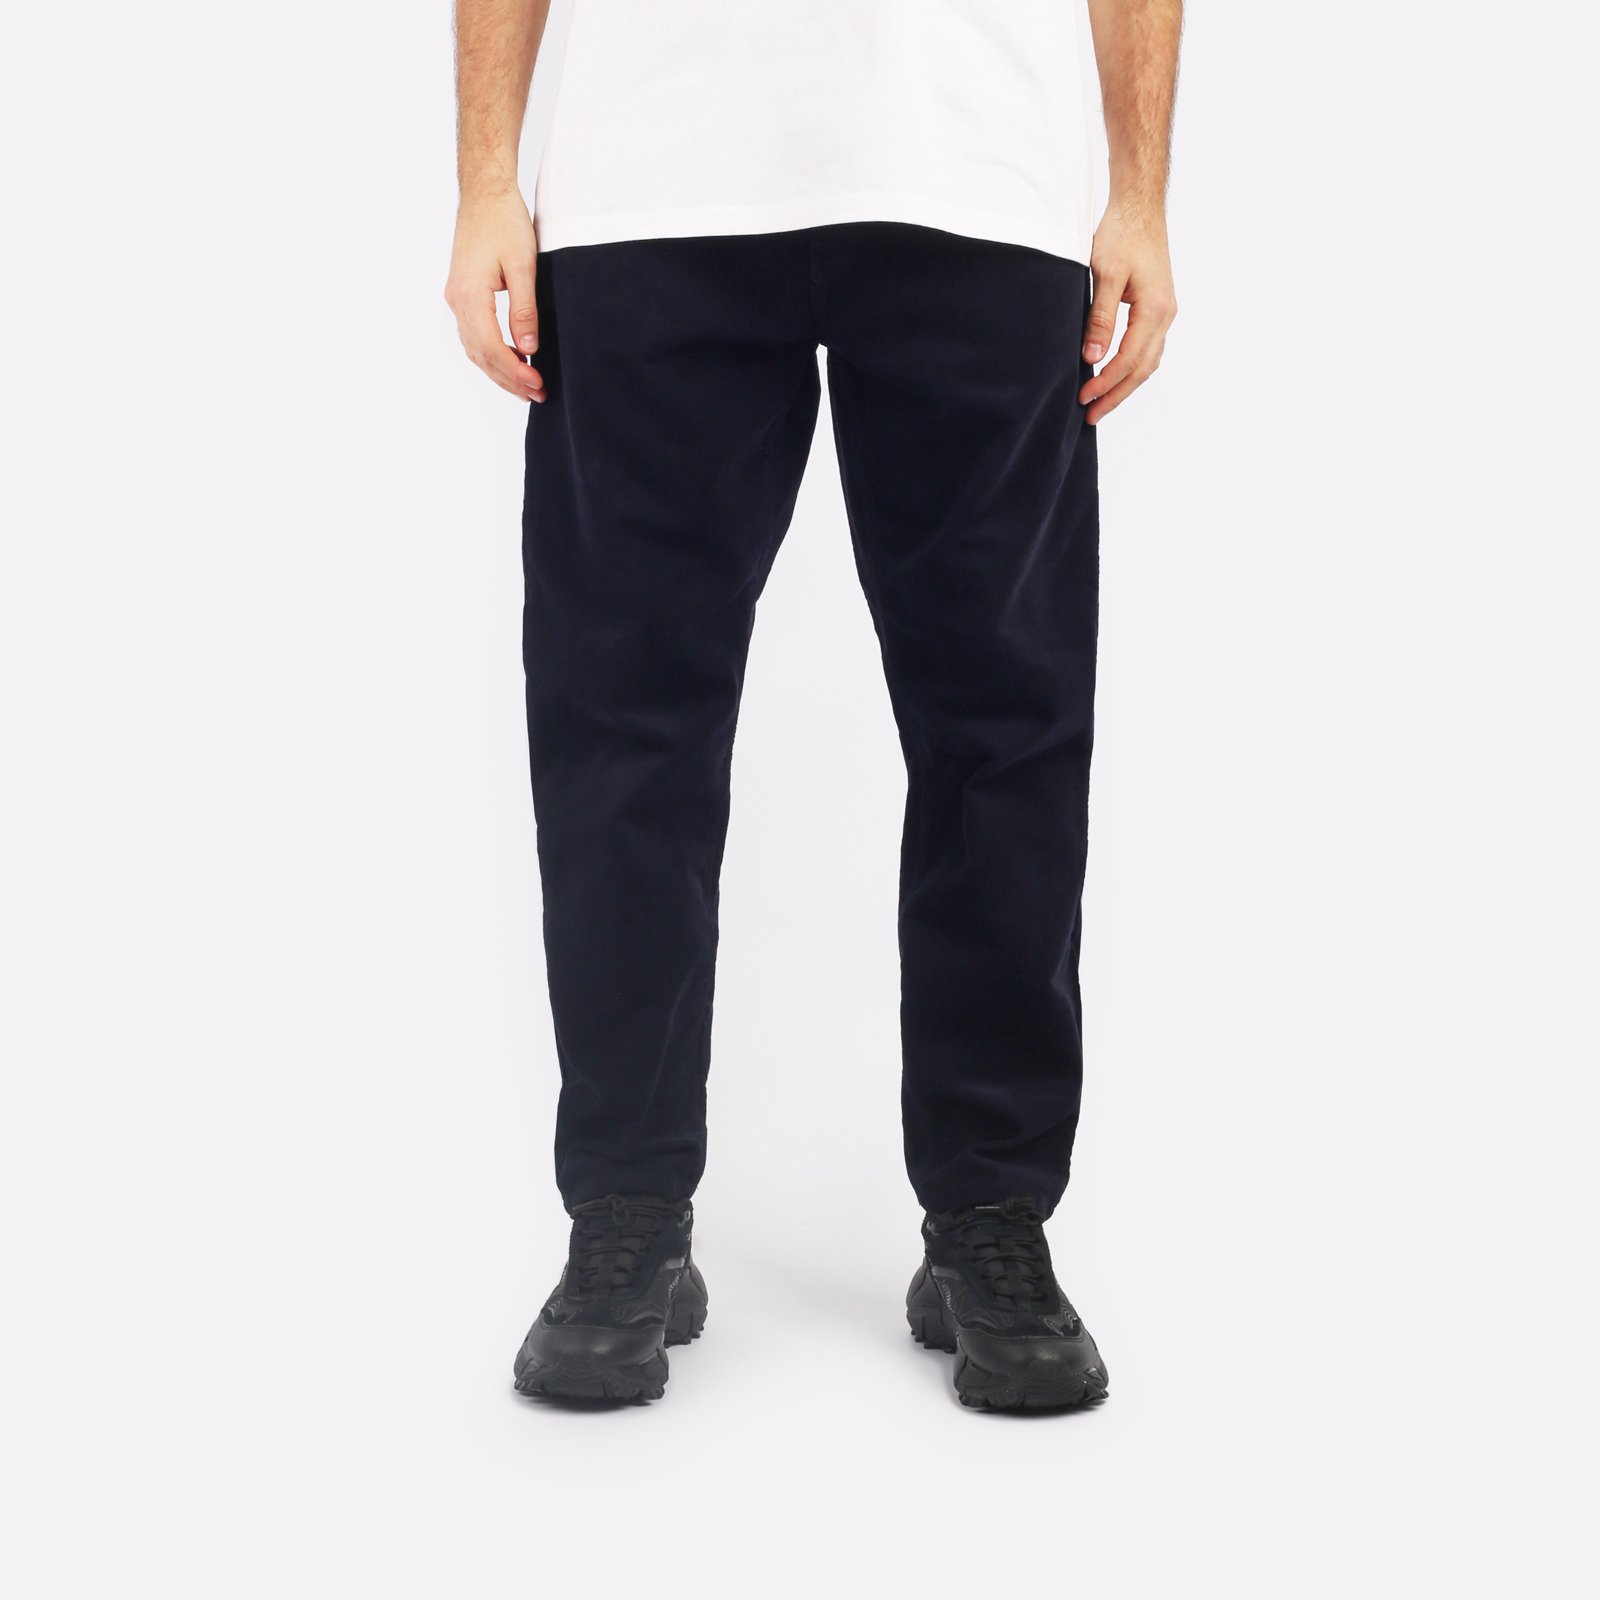 мужские брюки Carhartt WIP Newel Pant  (I031456-dark_navy)  - цена, описание, фото 1